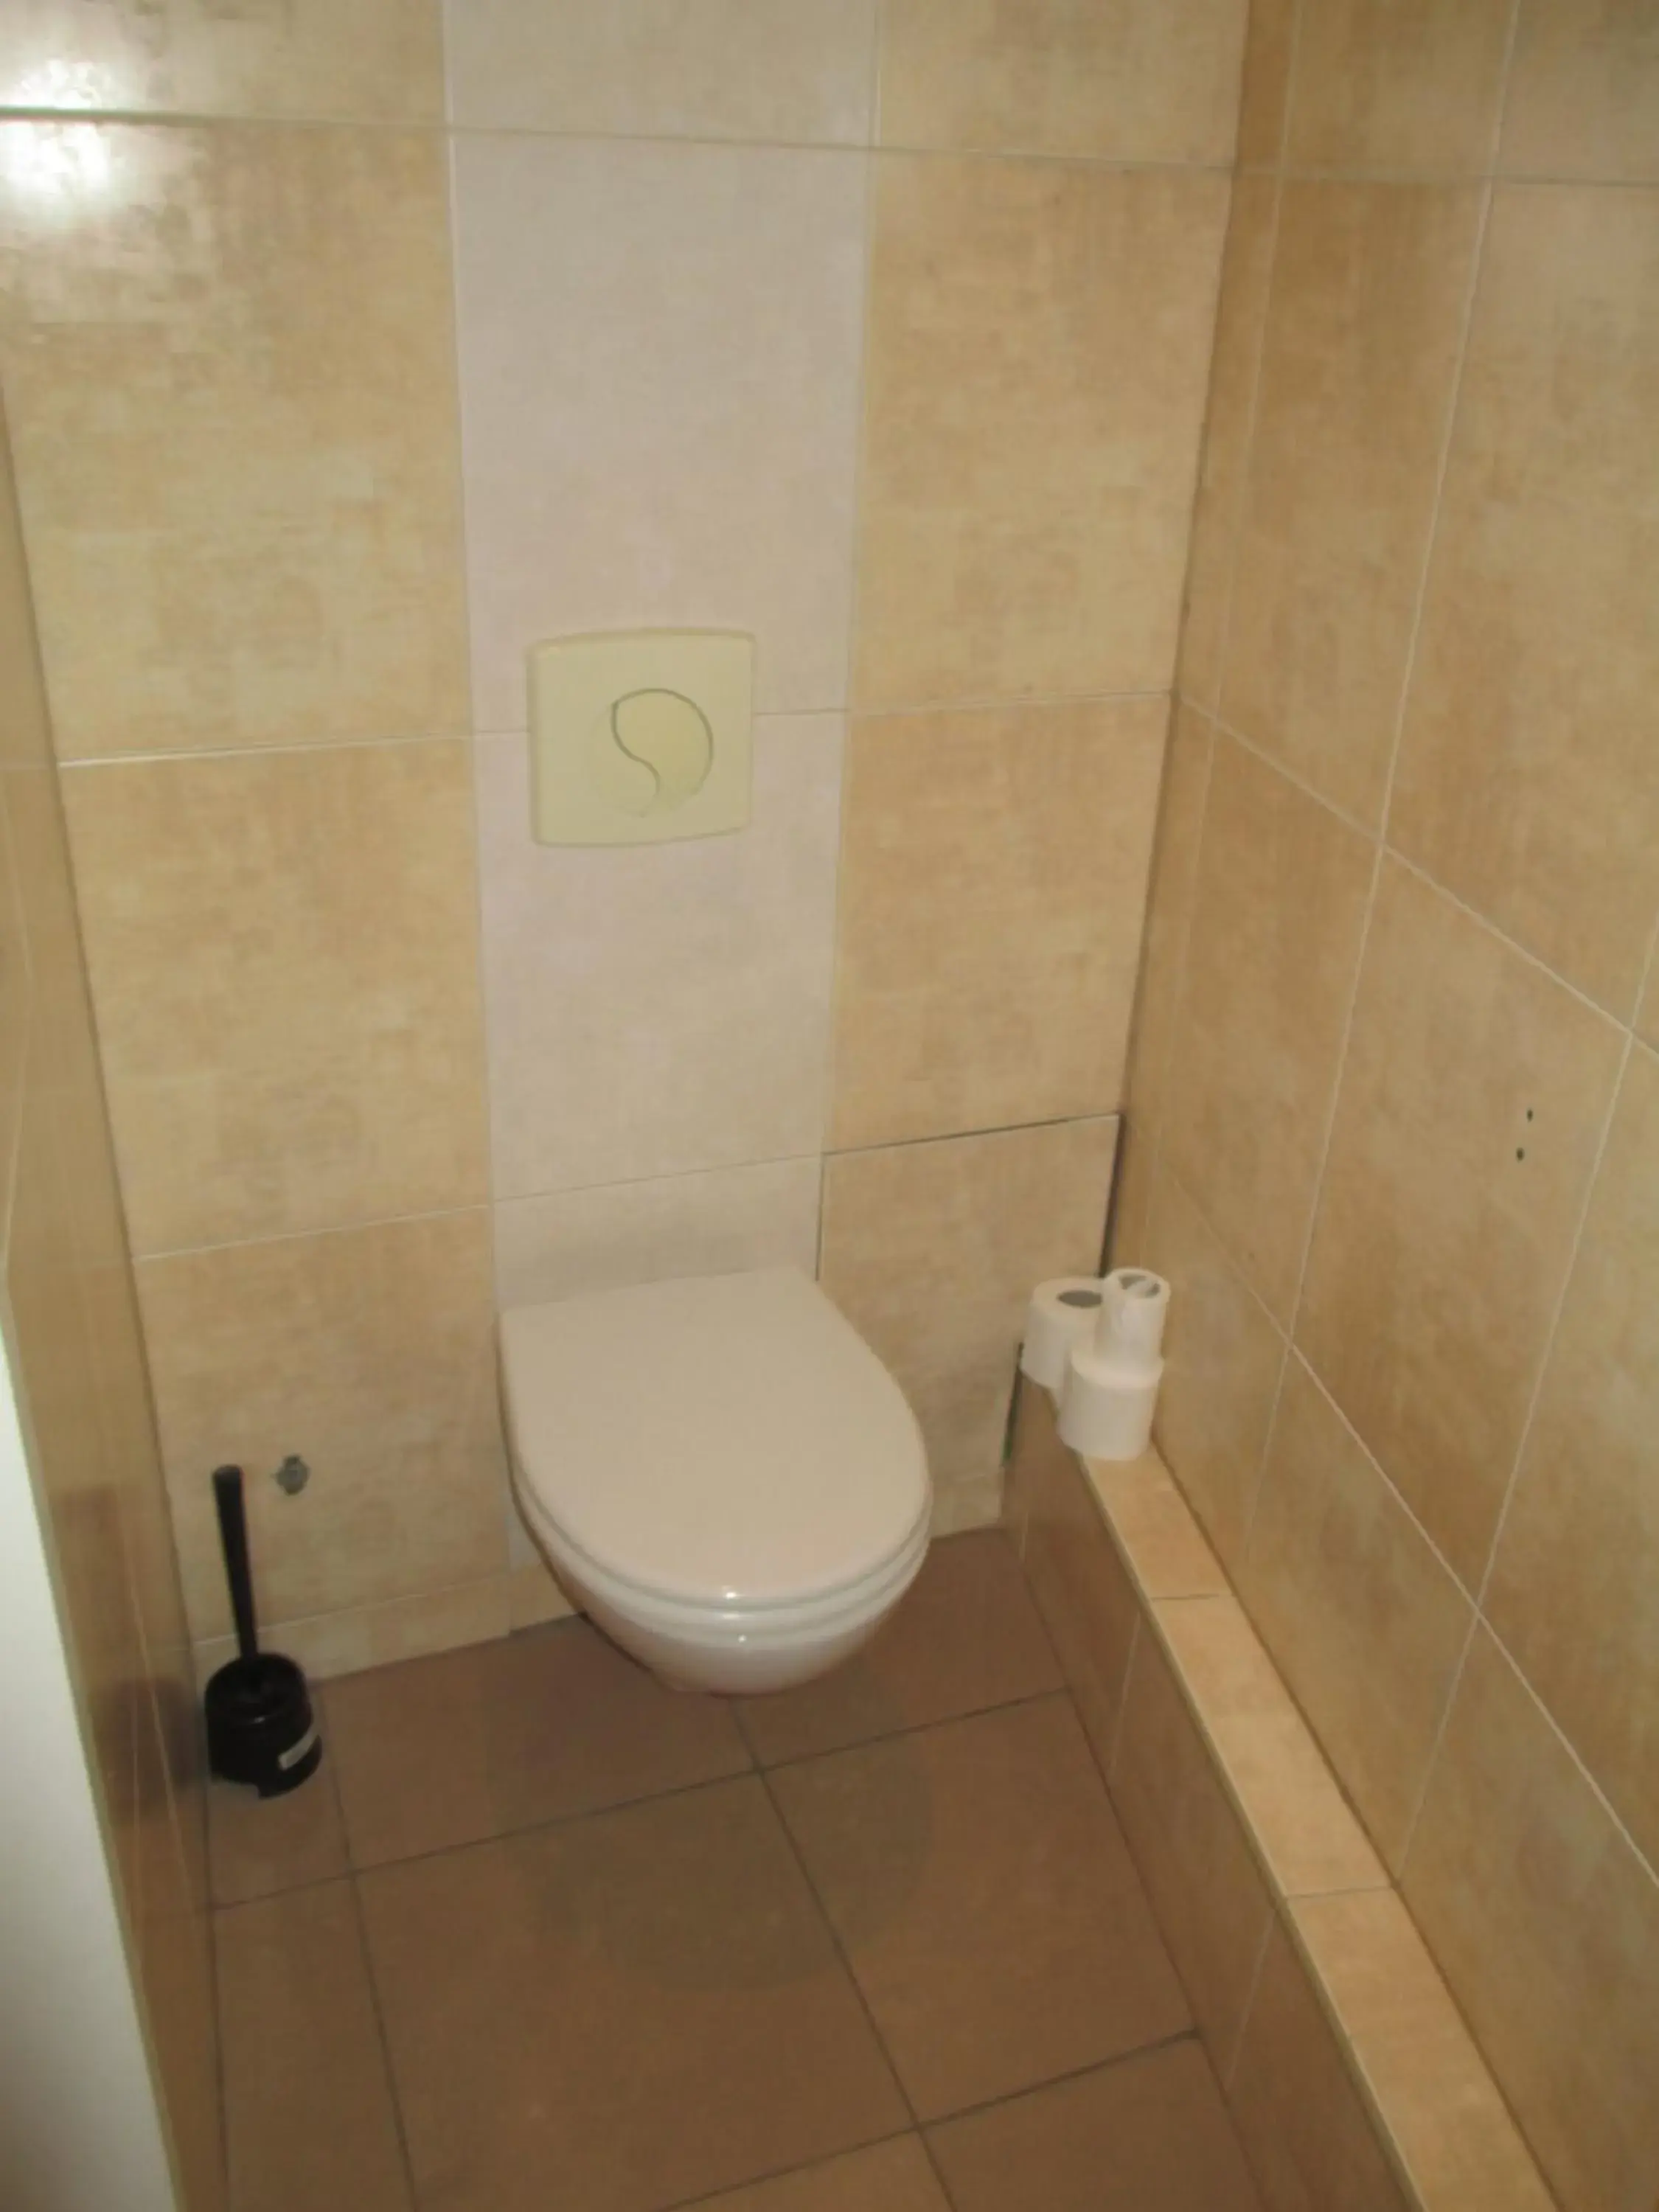 Toilet, Bathroom in Camelia Prestige - Place de la Nation